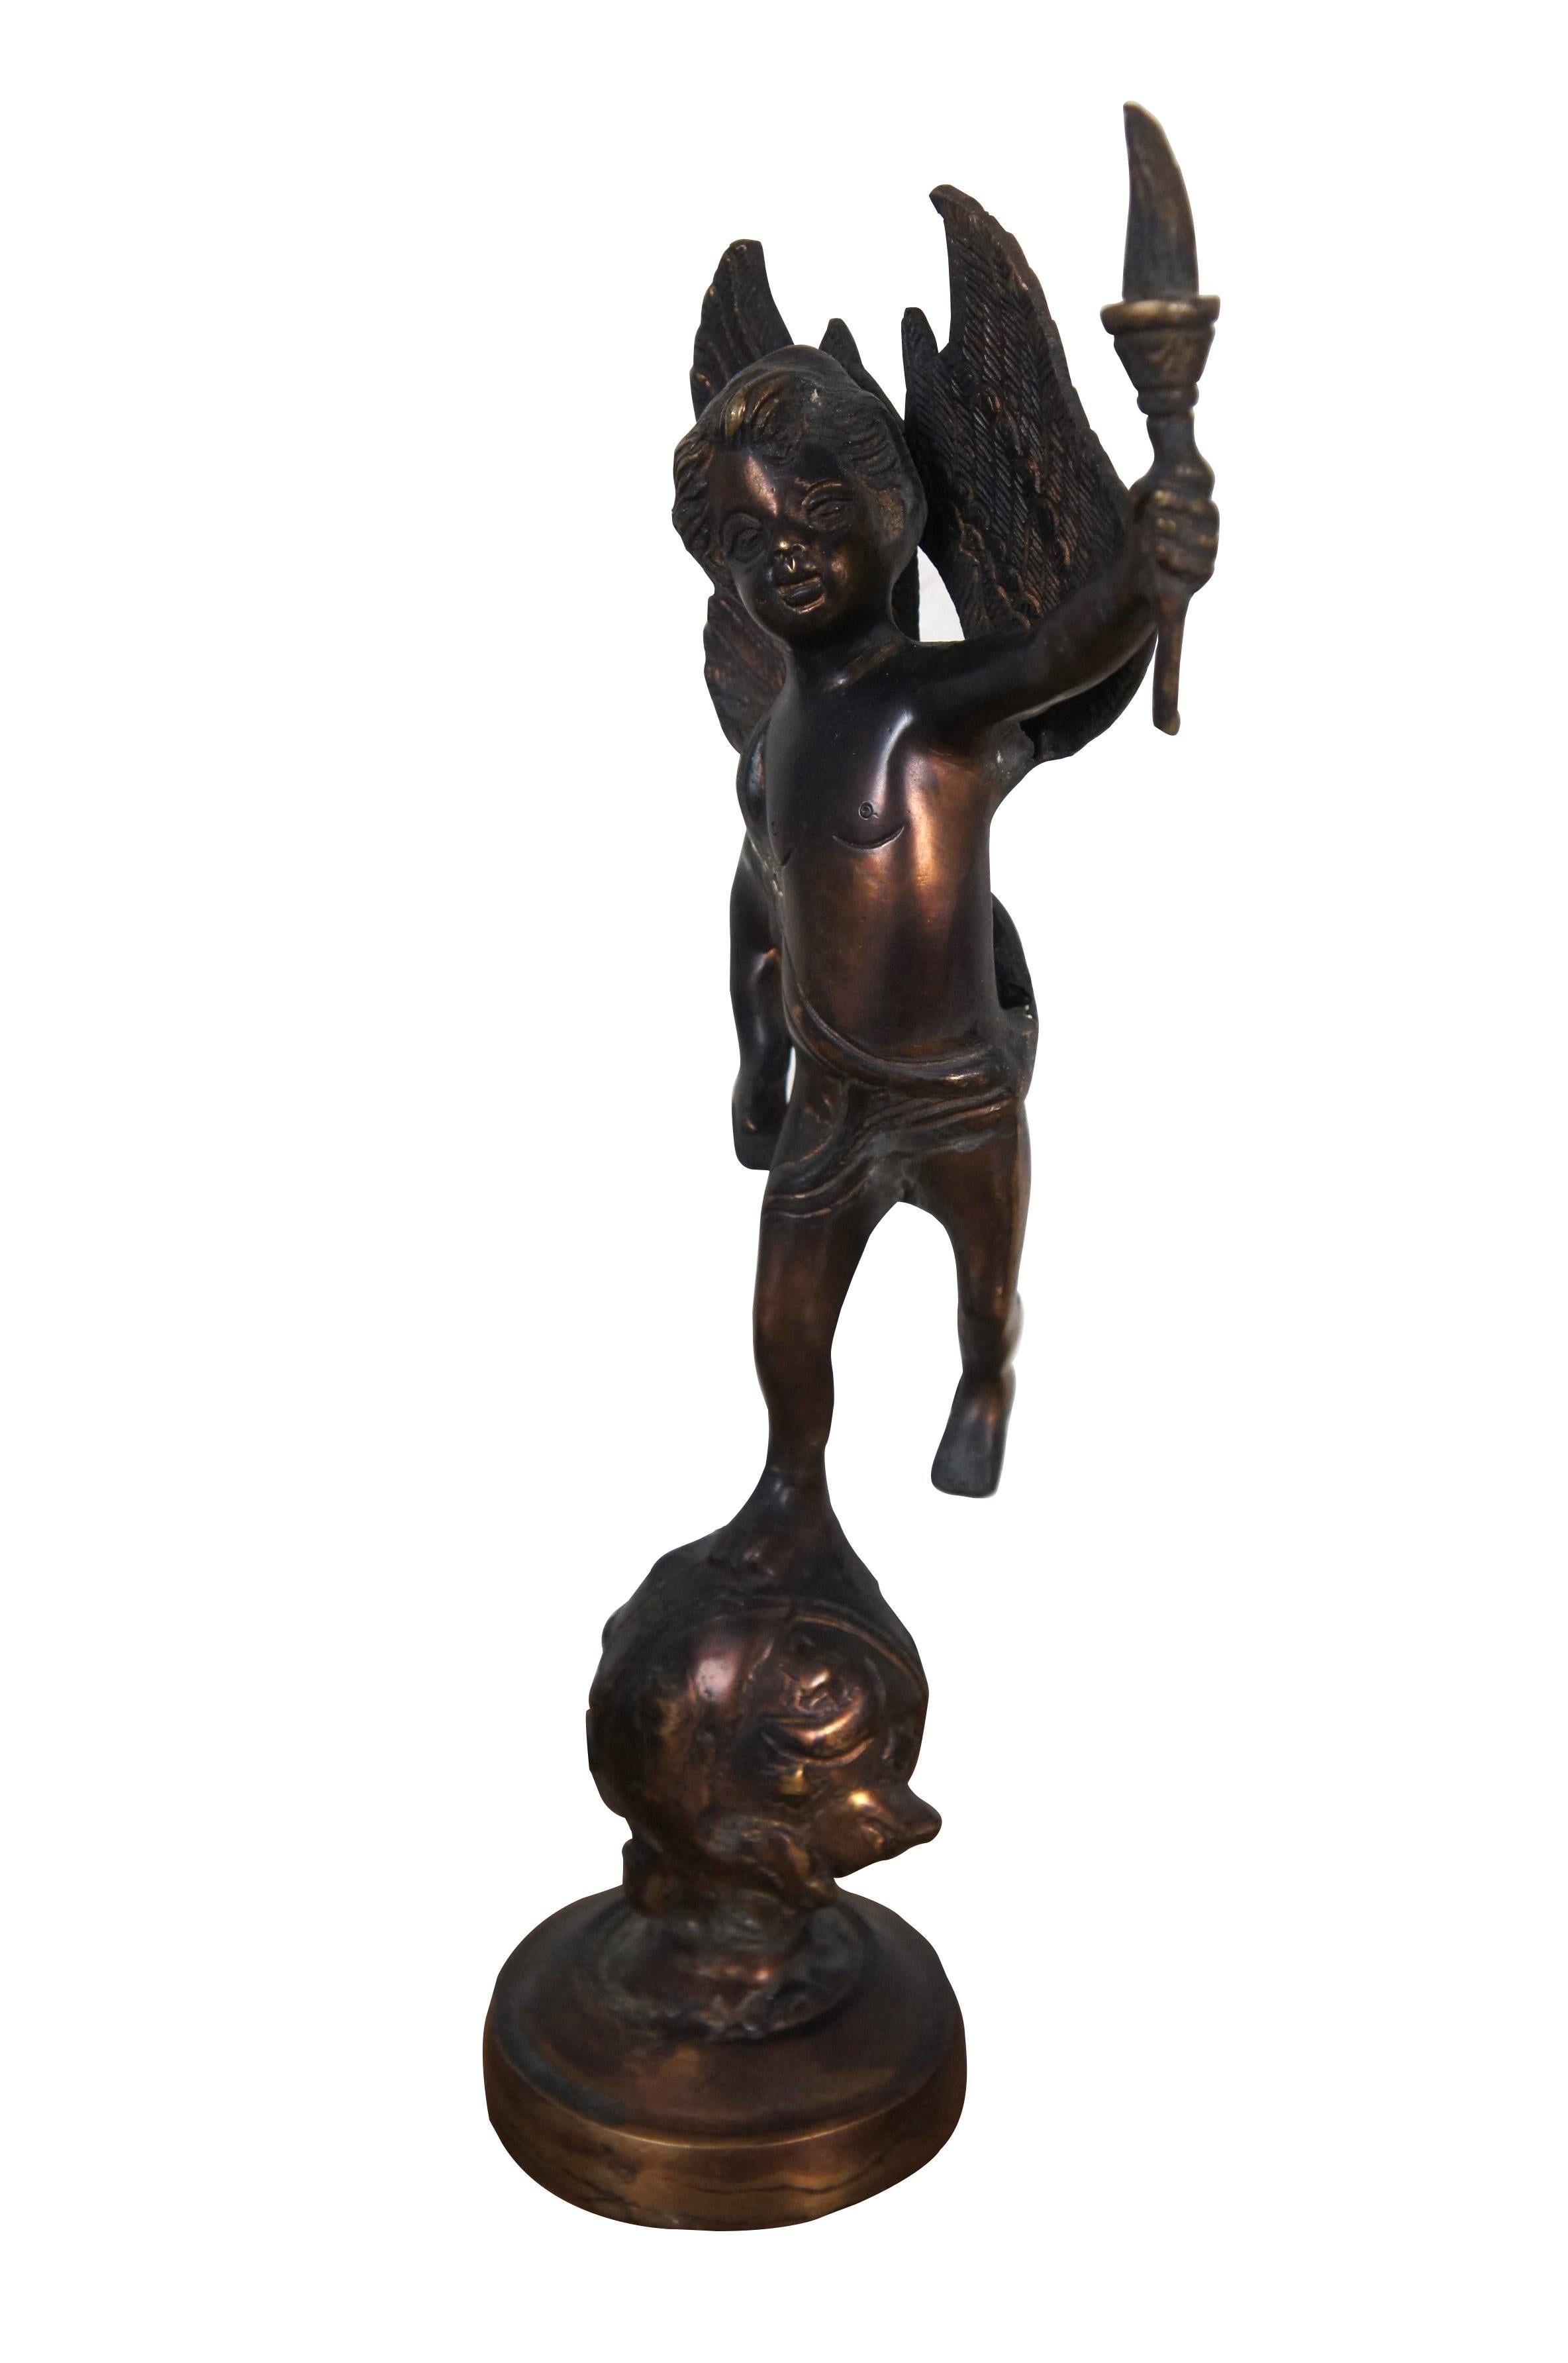 Vintage gegossene Bronzeskulptur / Figur in Form eines Putto / Cherub / Engel, der eine Fackel trägt und auf einer mit Sternen besetzten Weltkugel thront.

